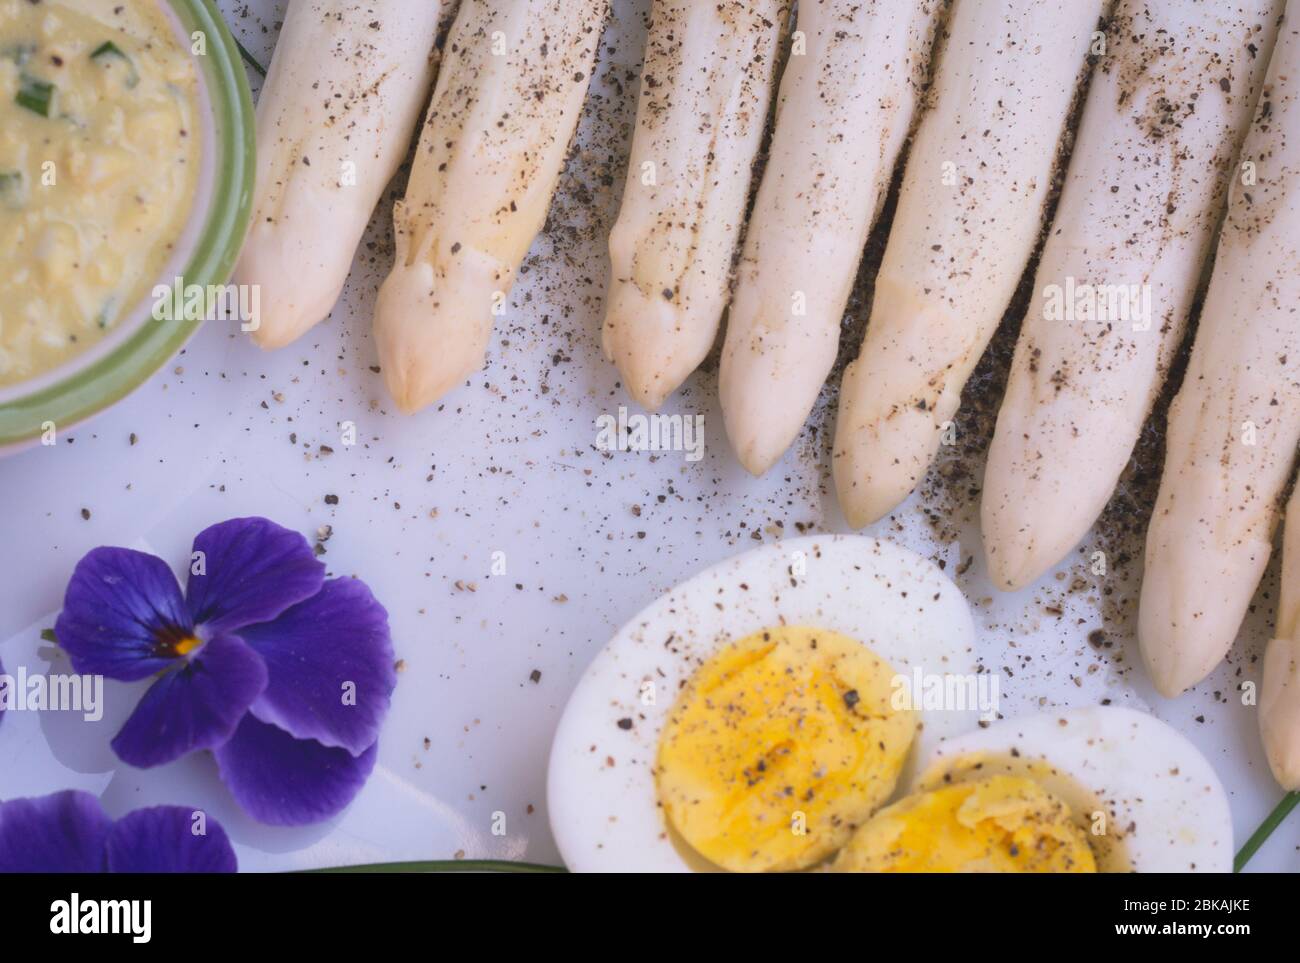 Bund frischer, ungekochter weißer Spargel und gekochte Eier, neue Ernte, aus nächster Nähe. Filtereffekt. Gemüse der Saison. Selektiver Fokus Stockfoto